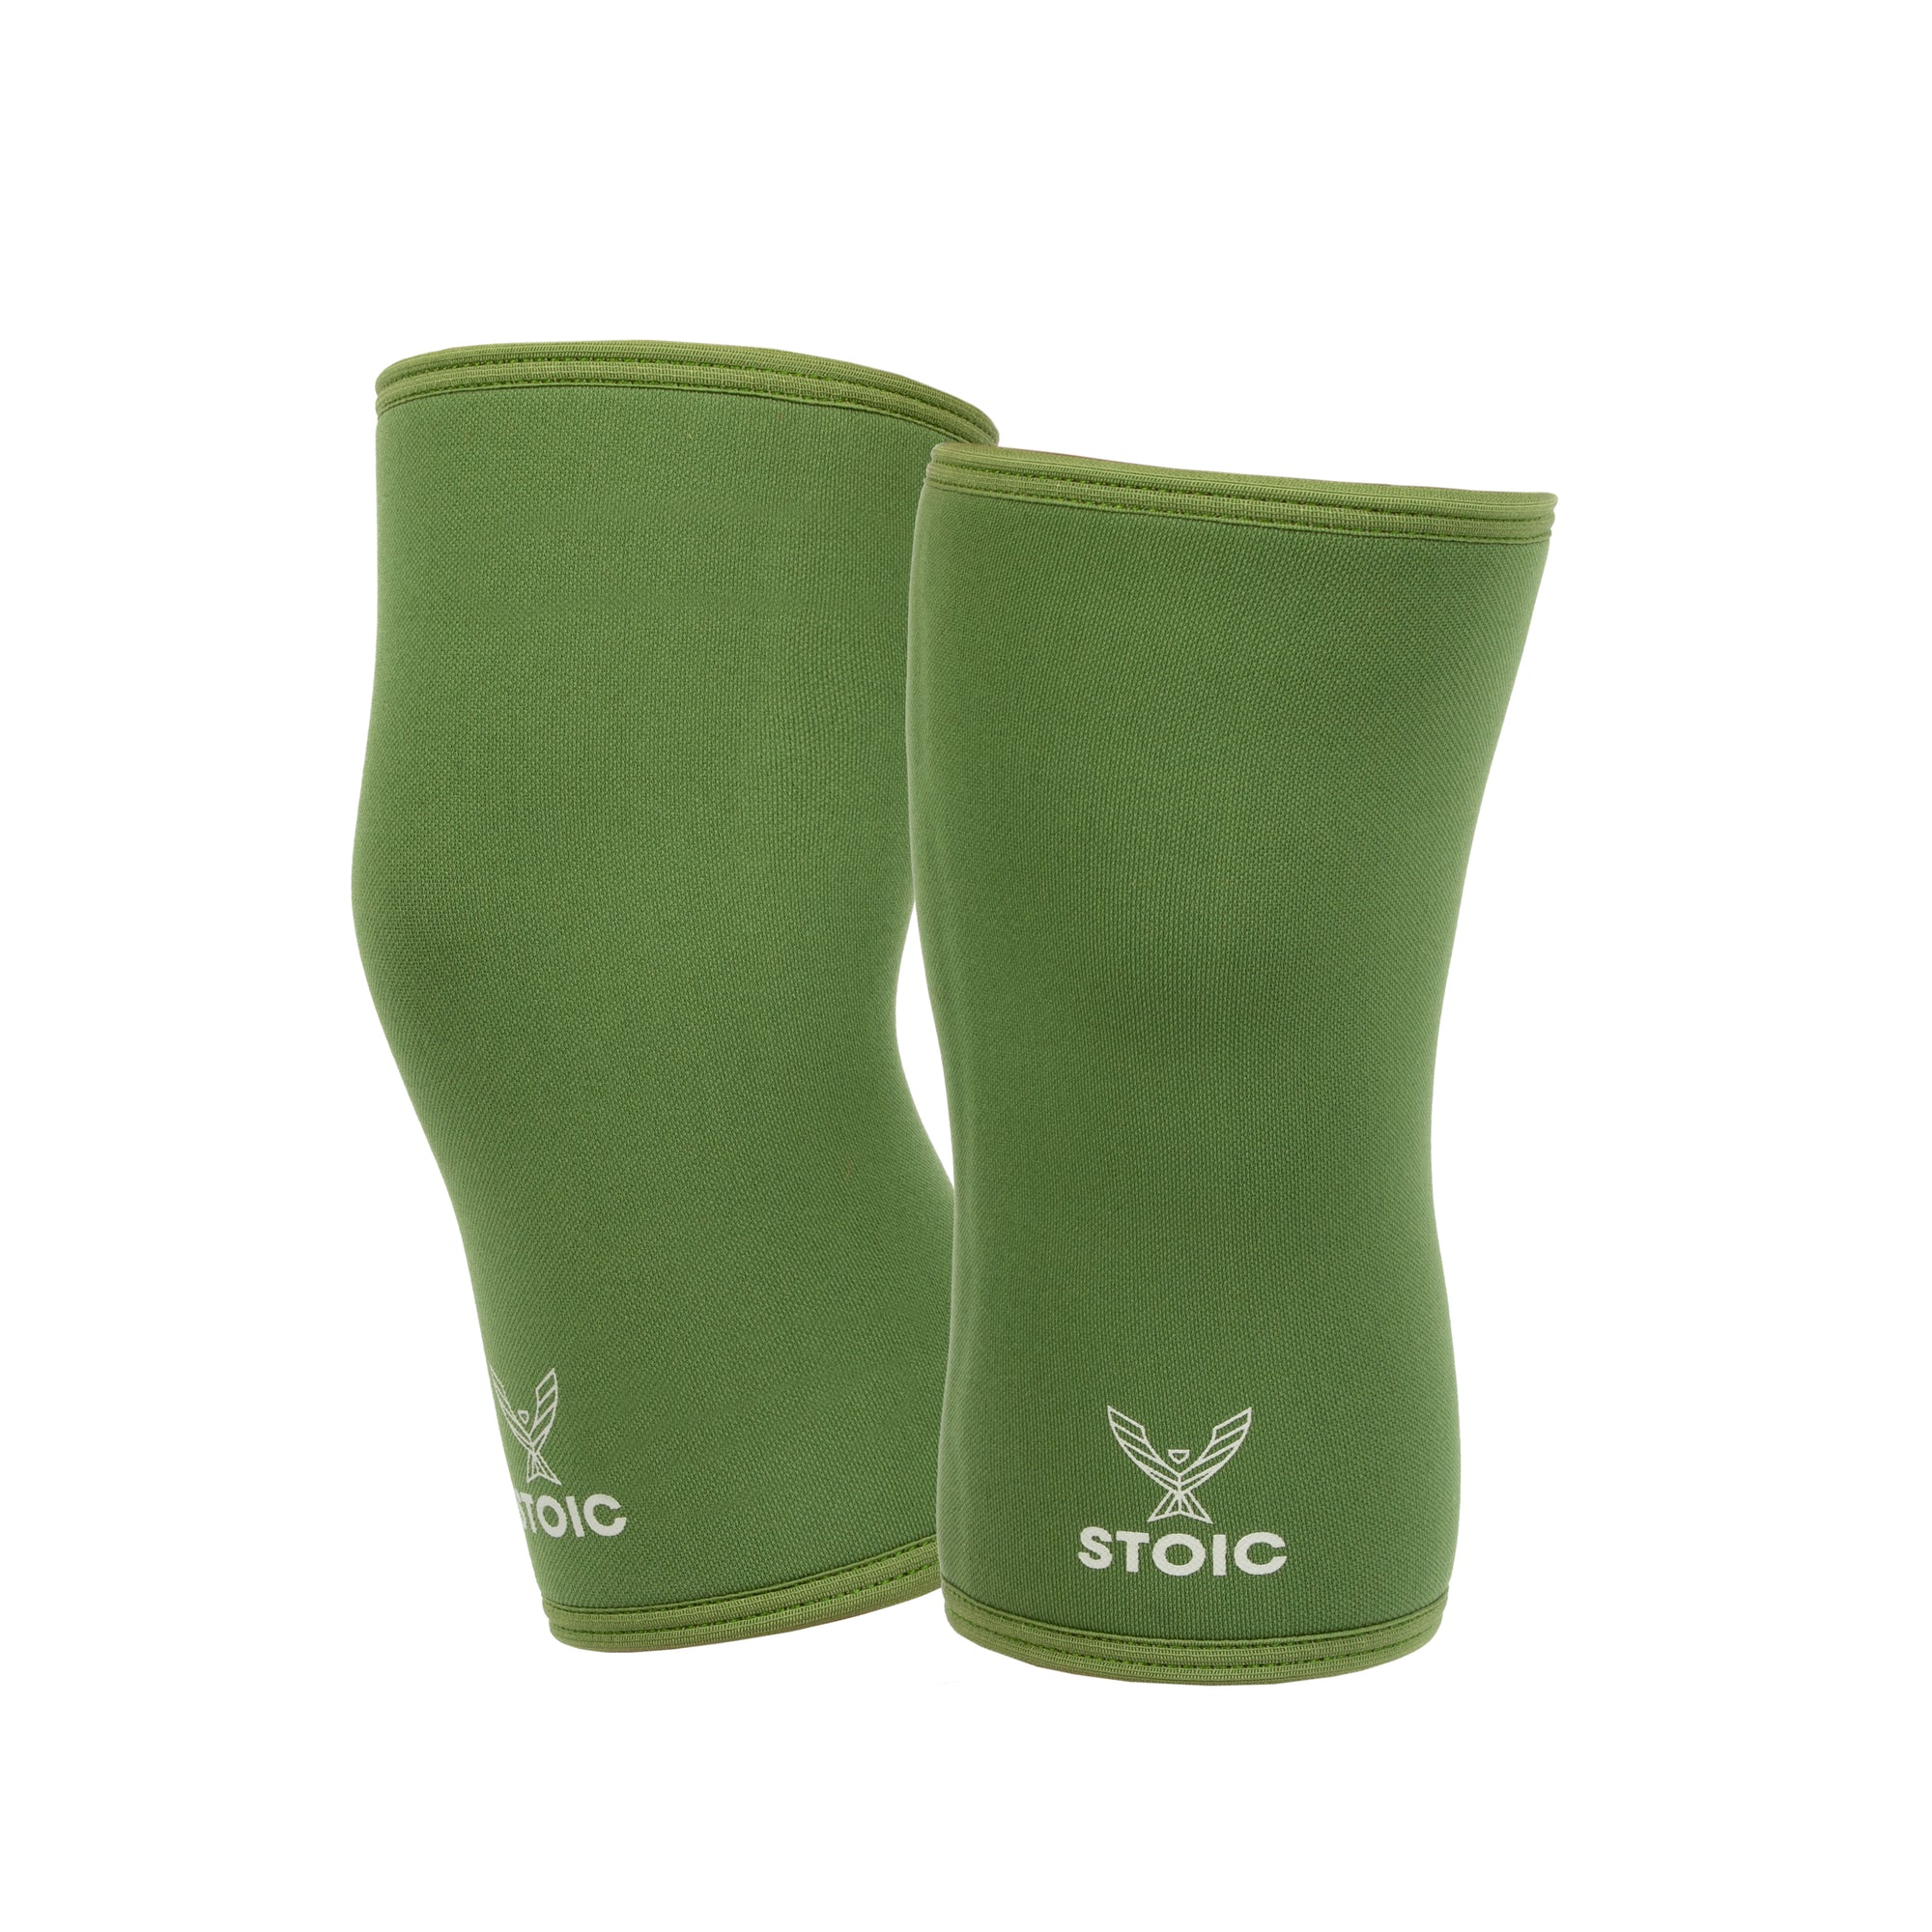 Stoic Knee Sleeves - Olive Drab